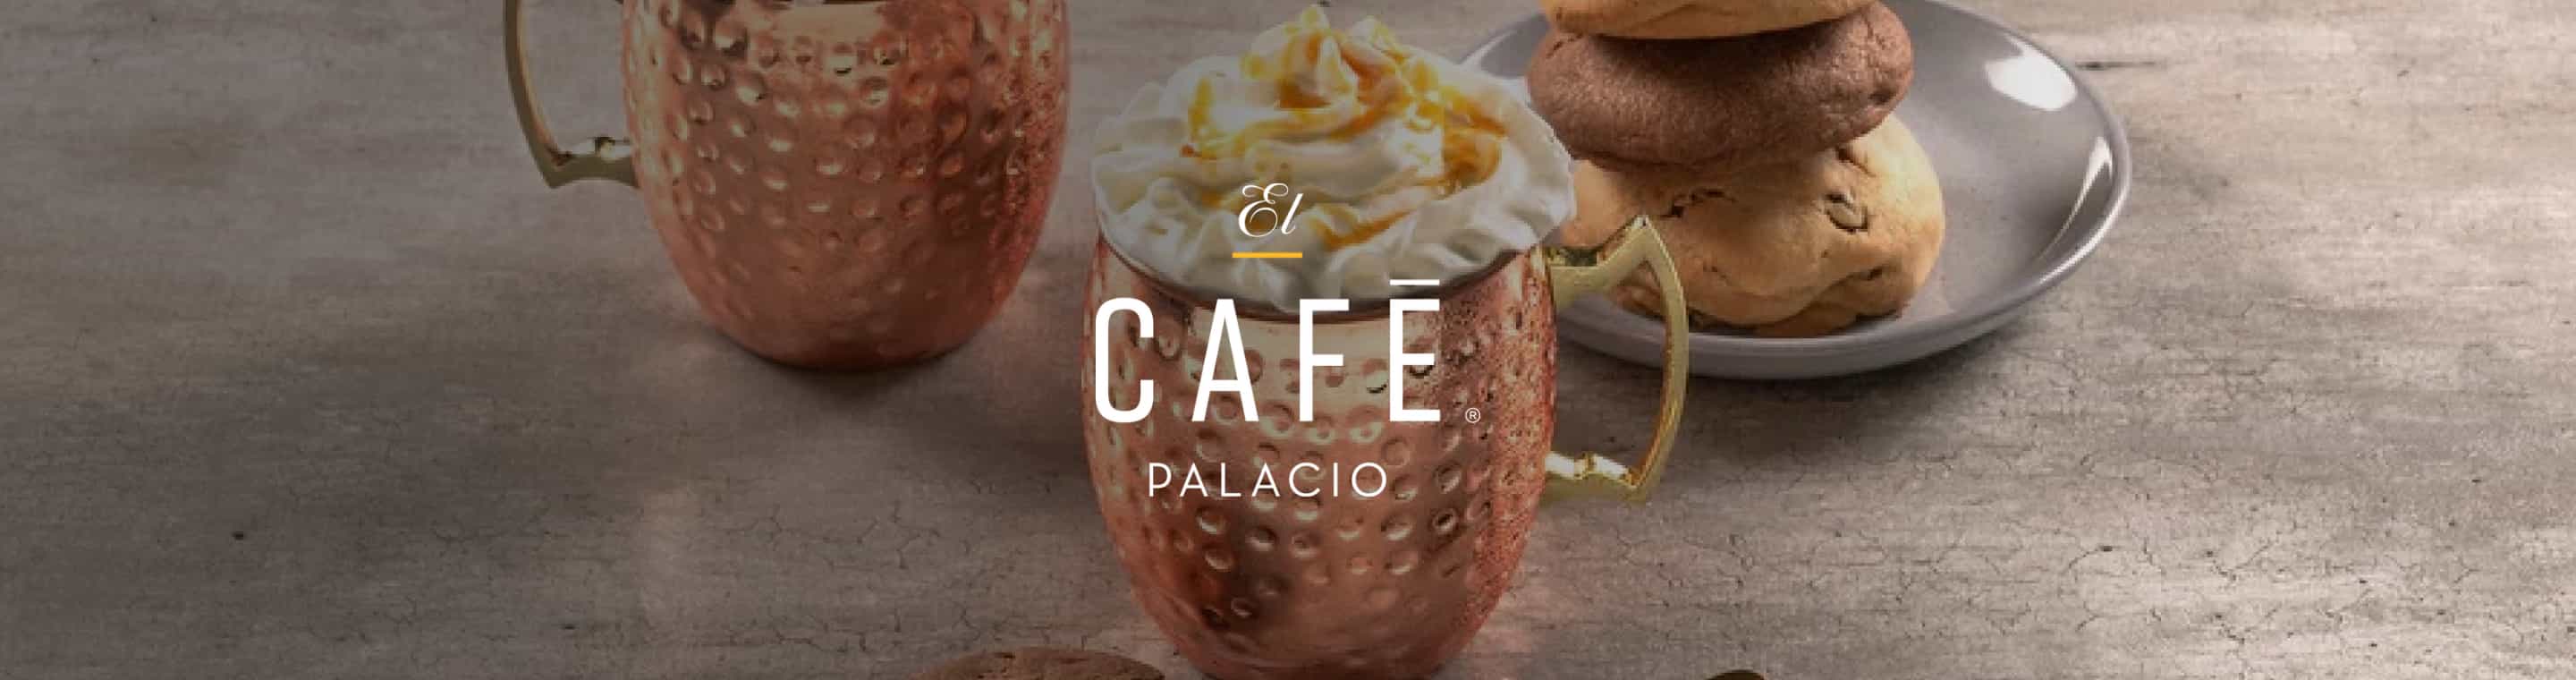 El Café Palacio